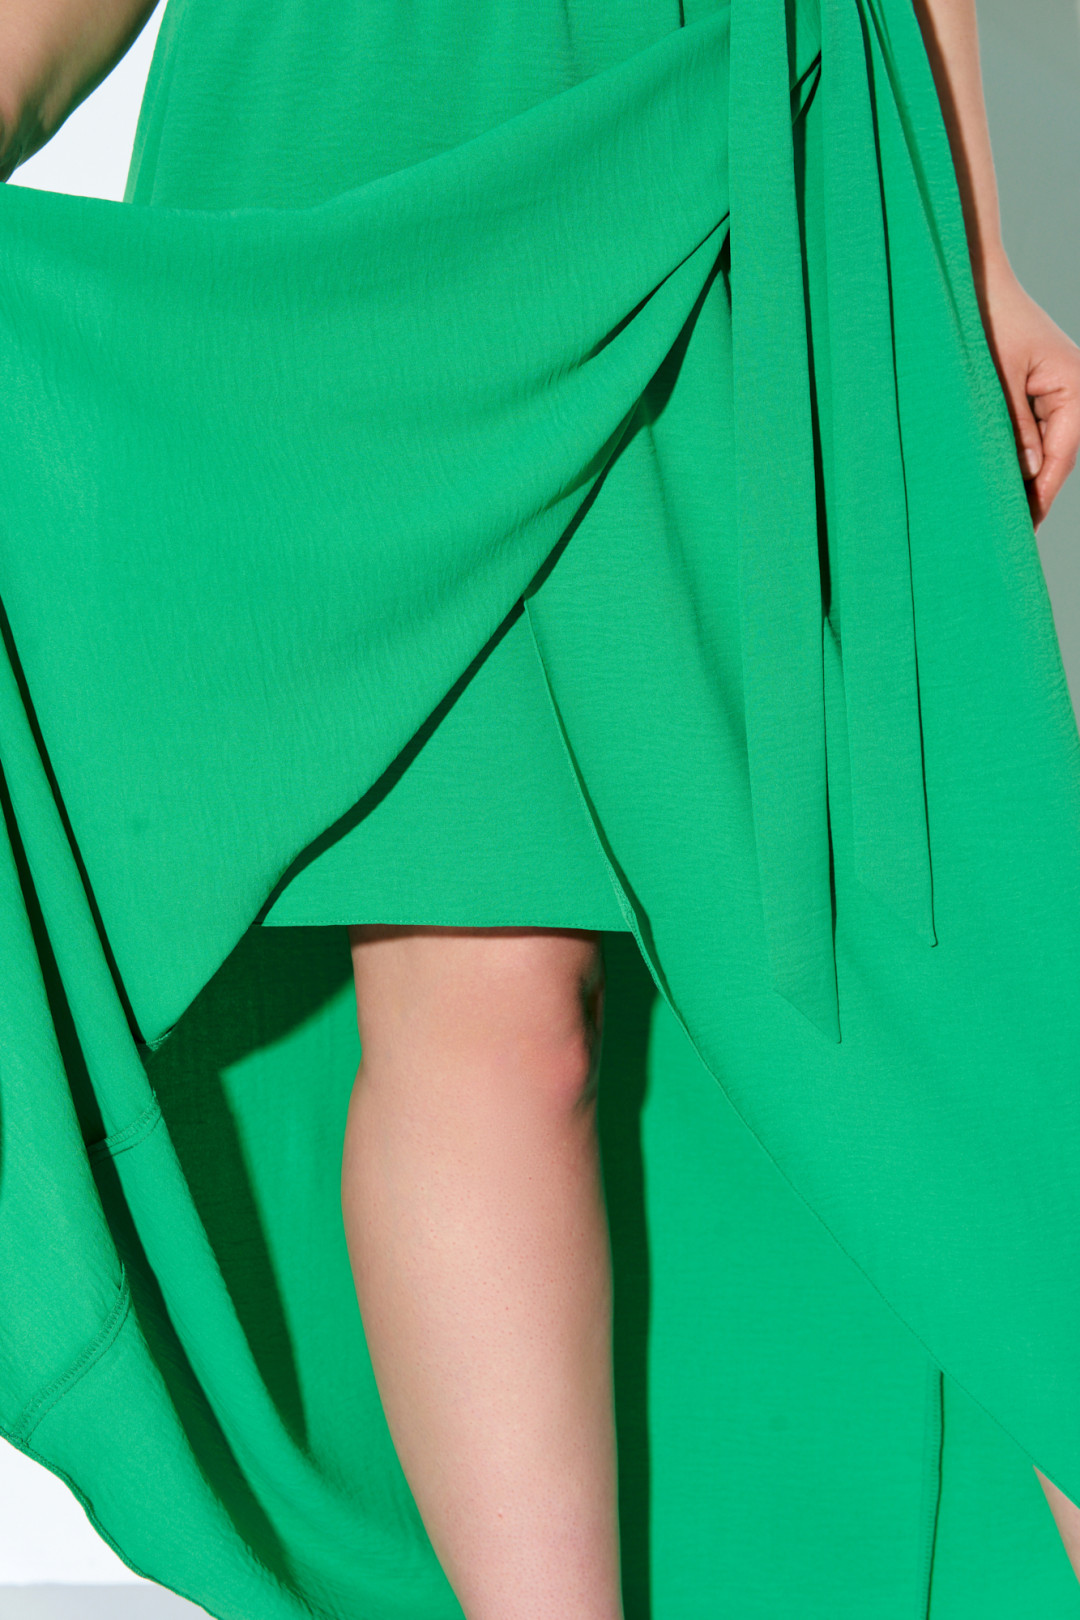 Платье Ива 1278 зеленый